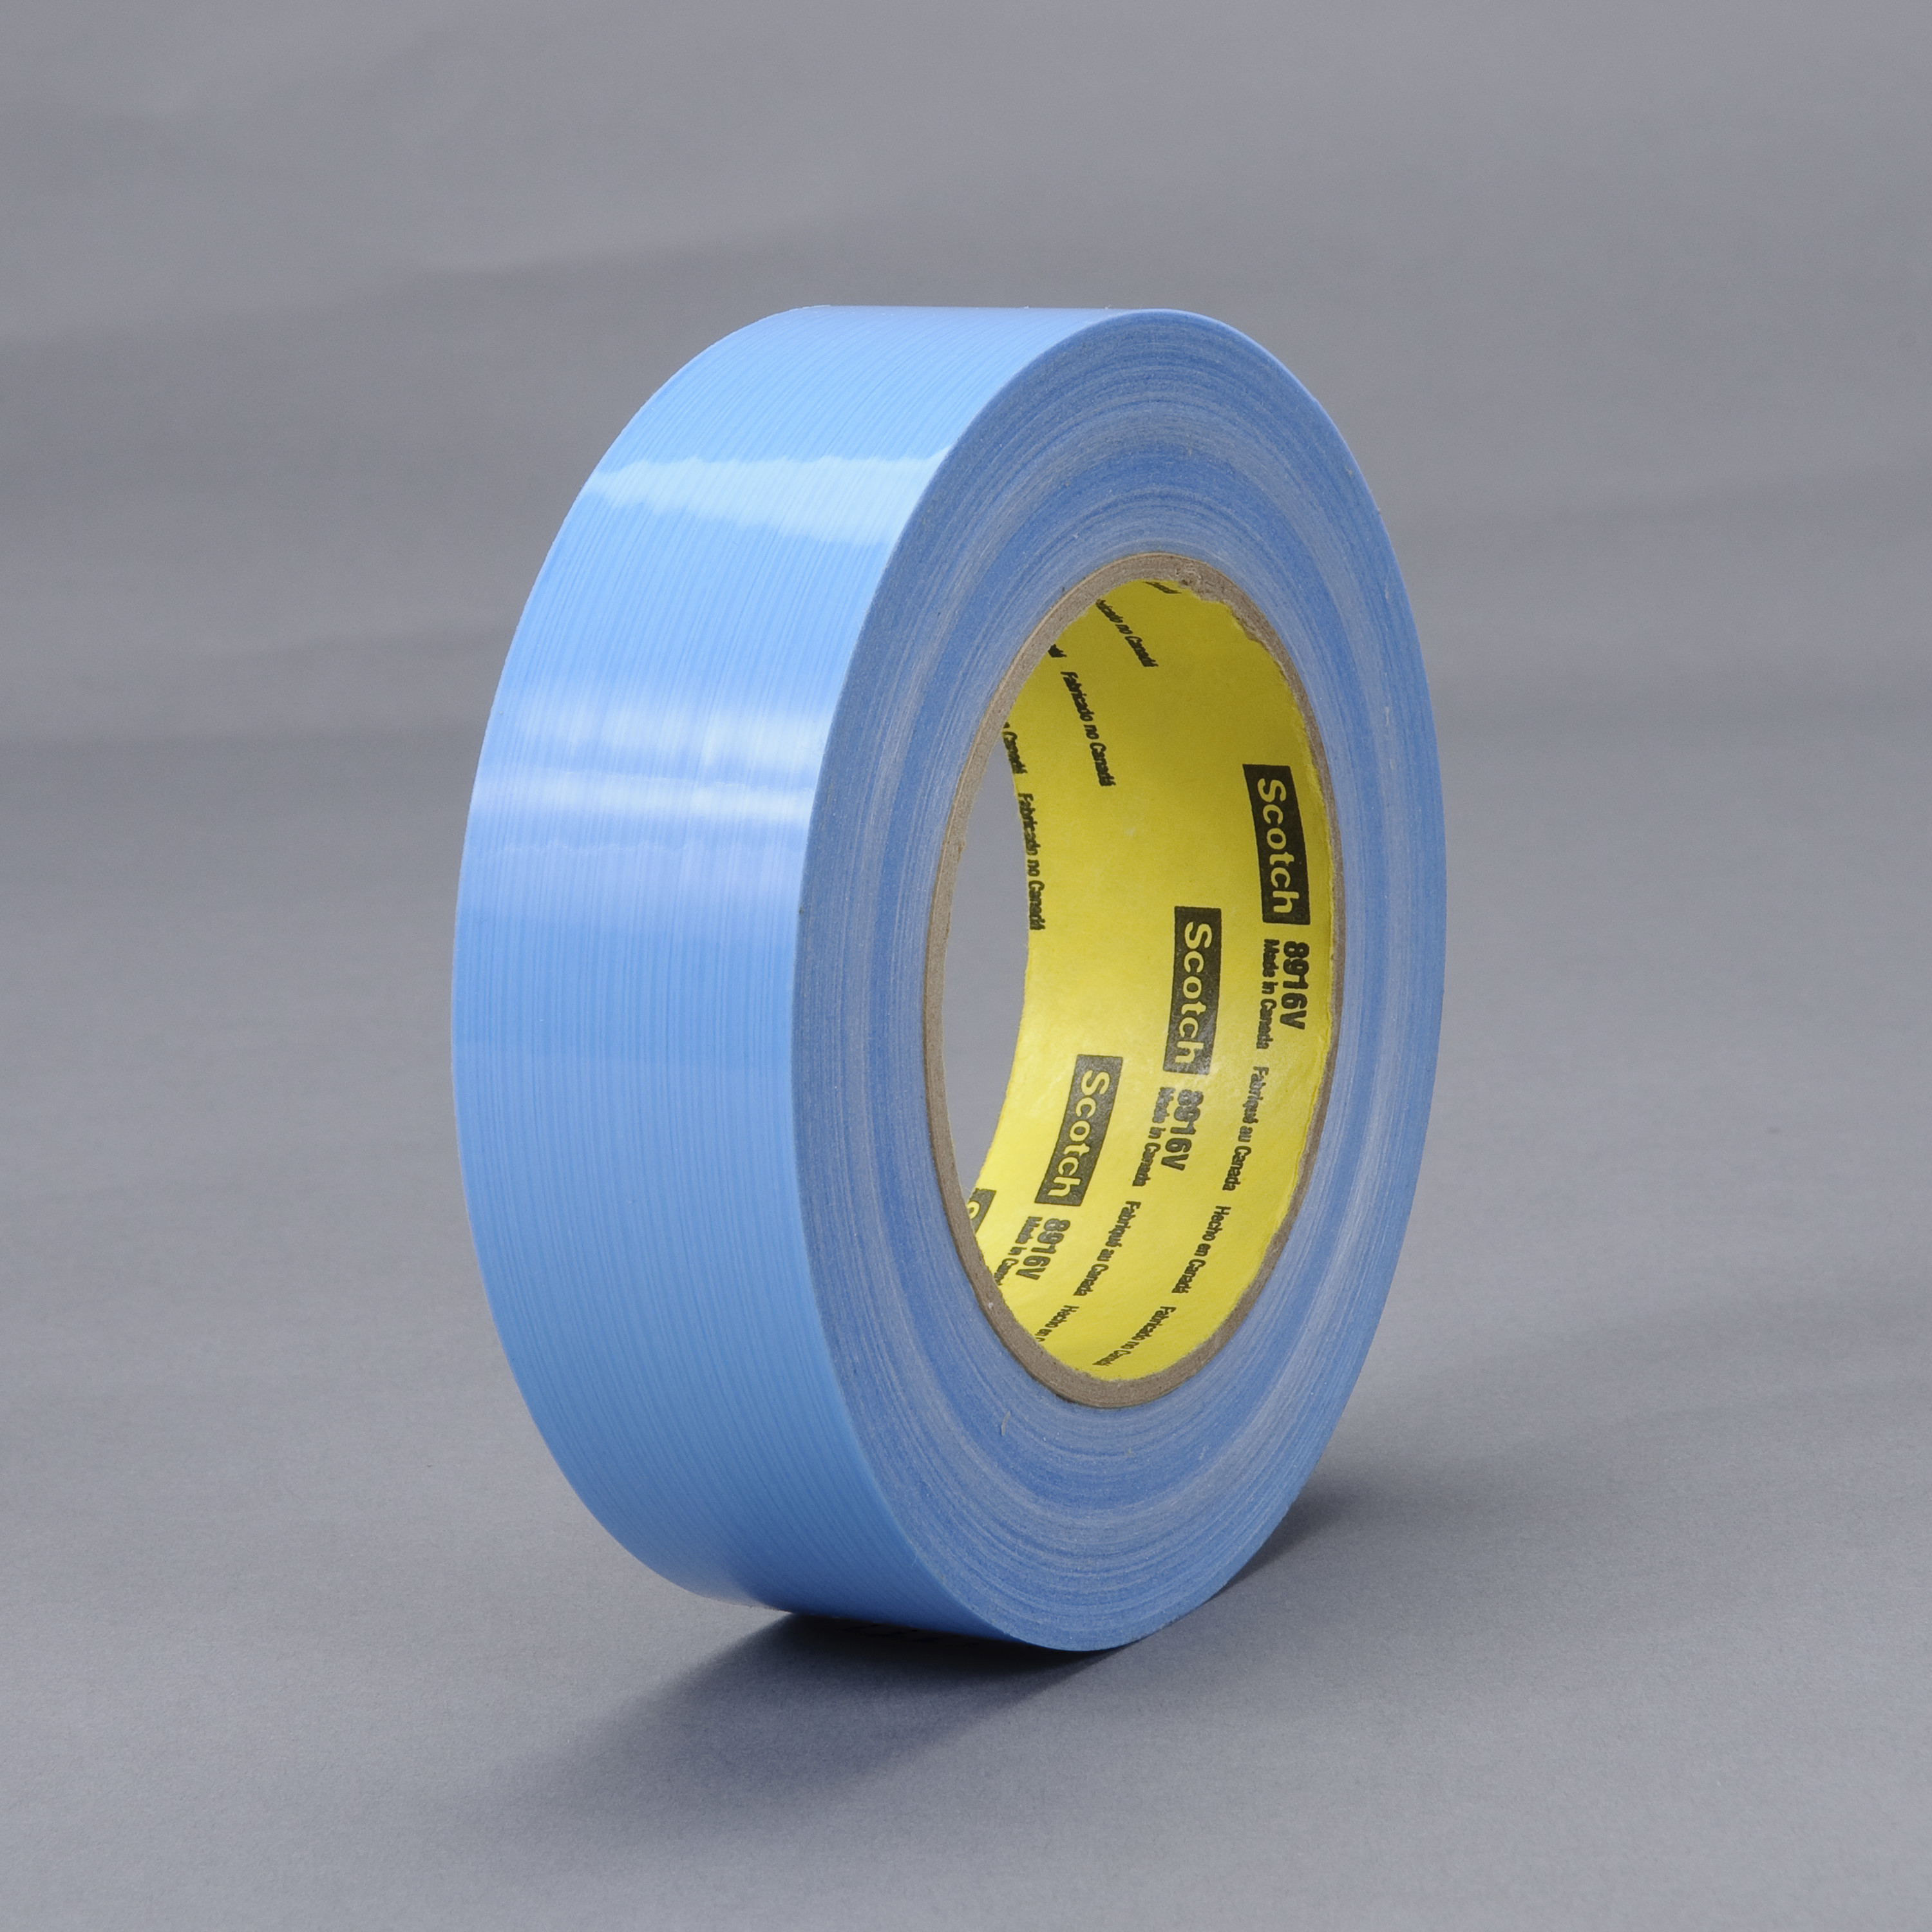 Scotch® Filament Tape 8916V, Blue, 48 mm x 55 m, 6.8 mil, 6.8 mil, 24
rolls per case